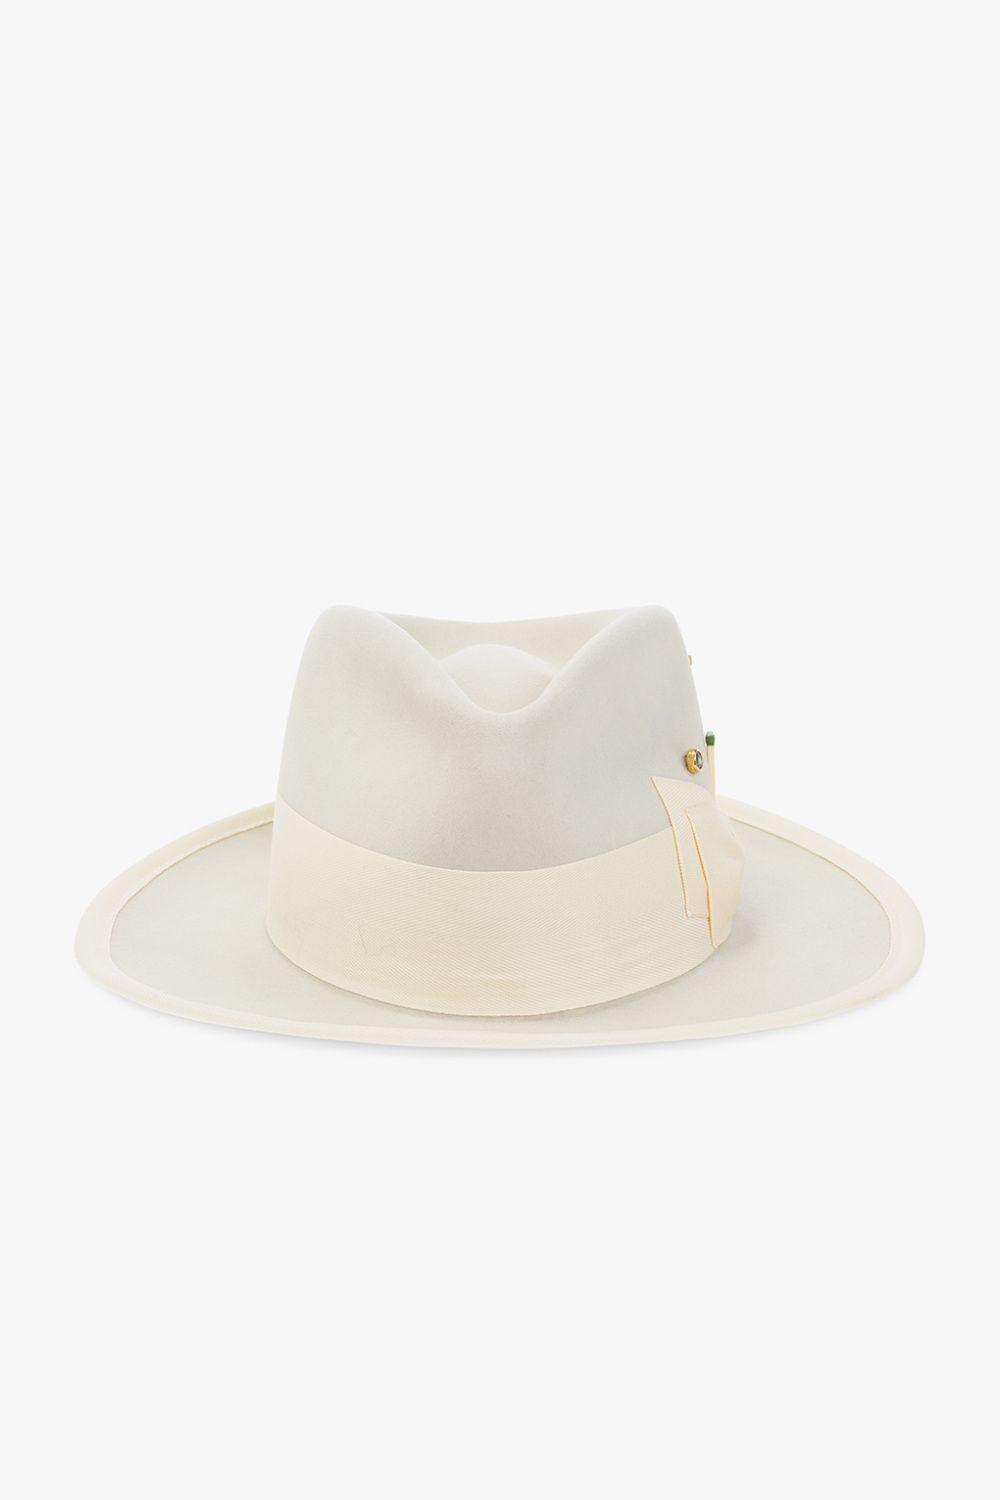 Nick Fouquet ‘Tuccio’ CAP hat